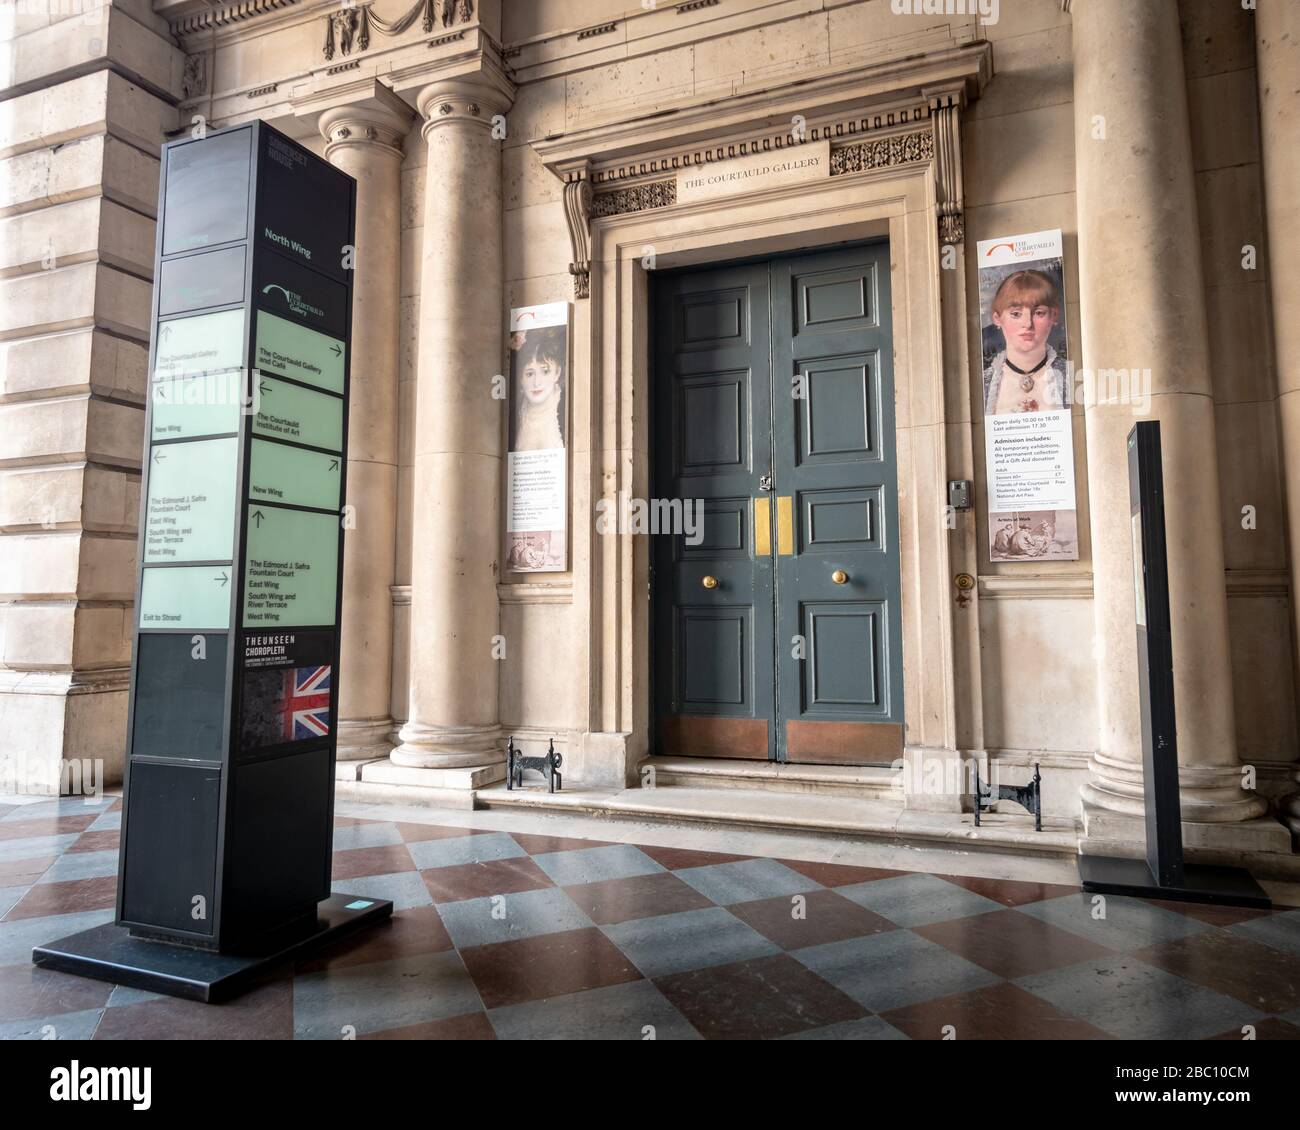 Eingang zur Galerie Courtauld. Eine öffentliche Galerie, die dem Institute of Art in Somerset House, London, zugeordnet ist. Stockfoto